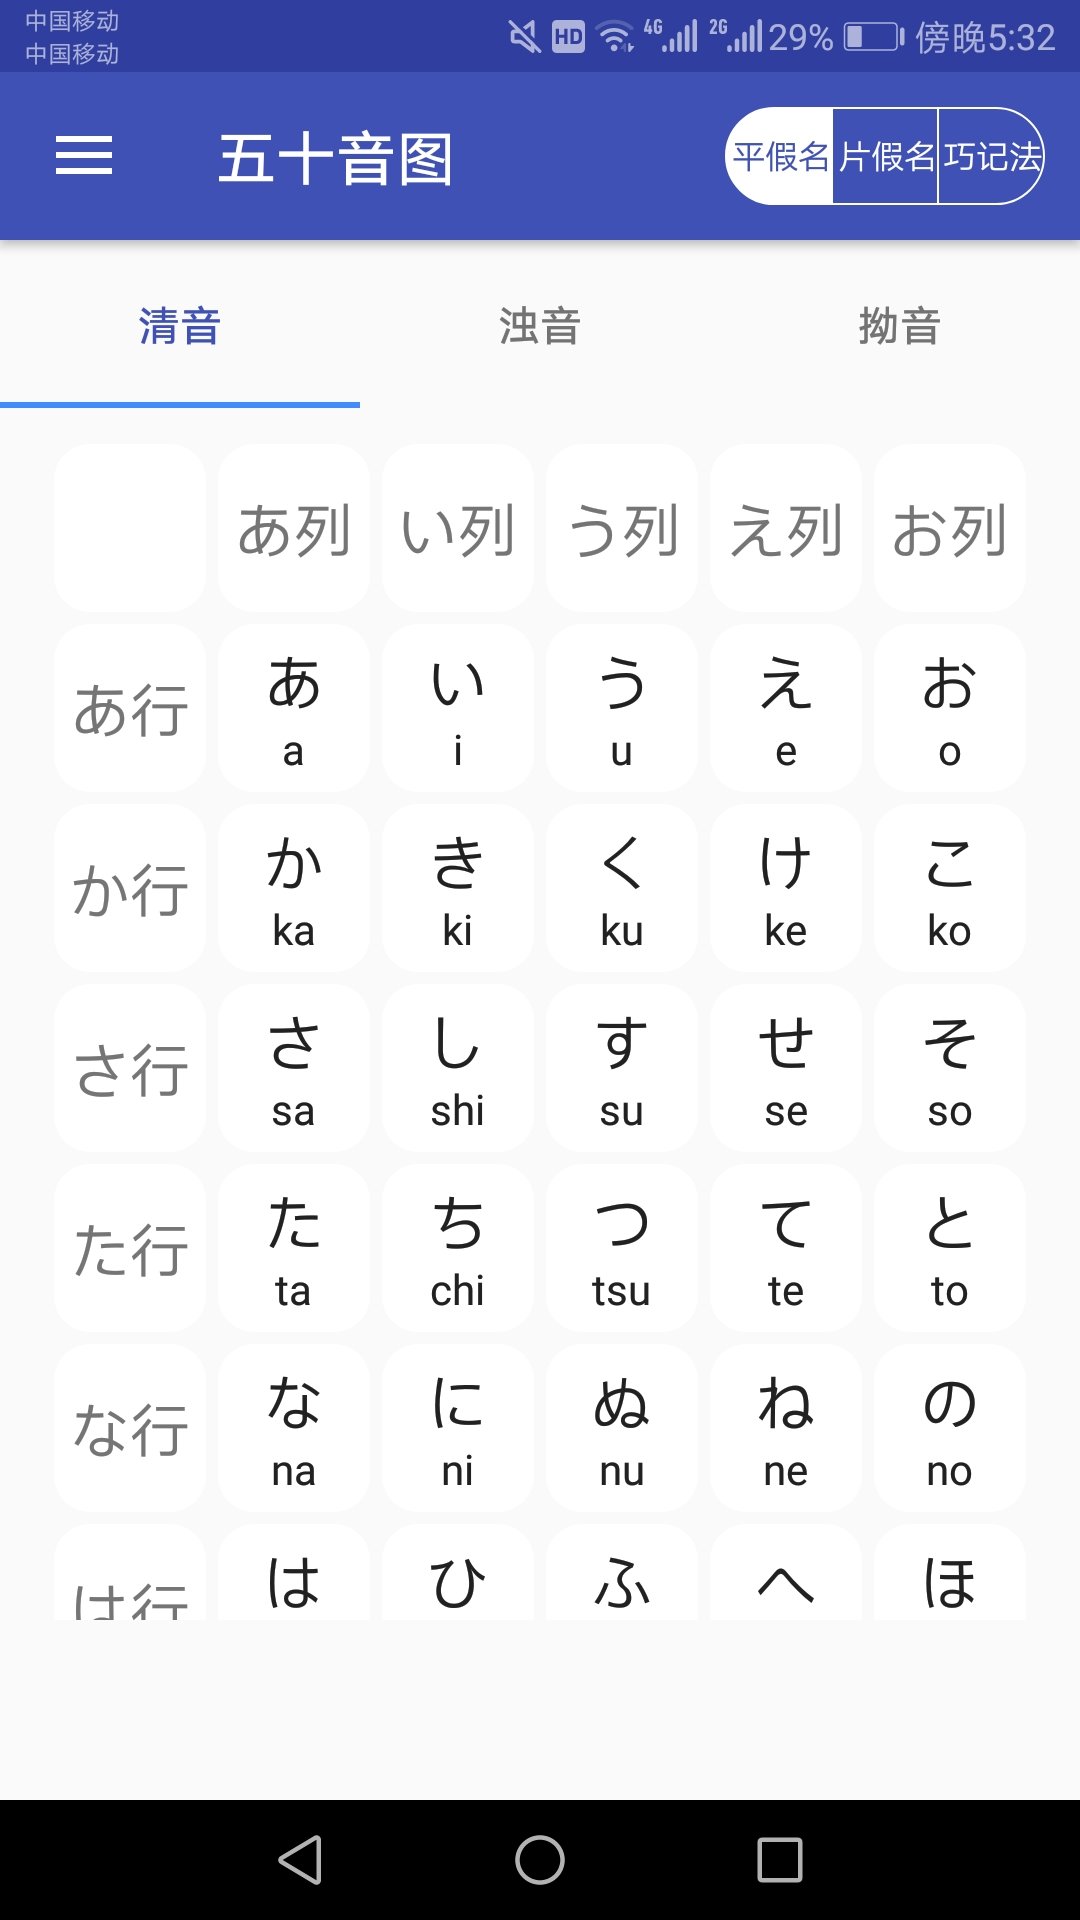 日语学习助手截图